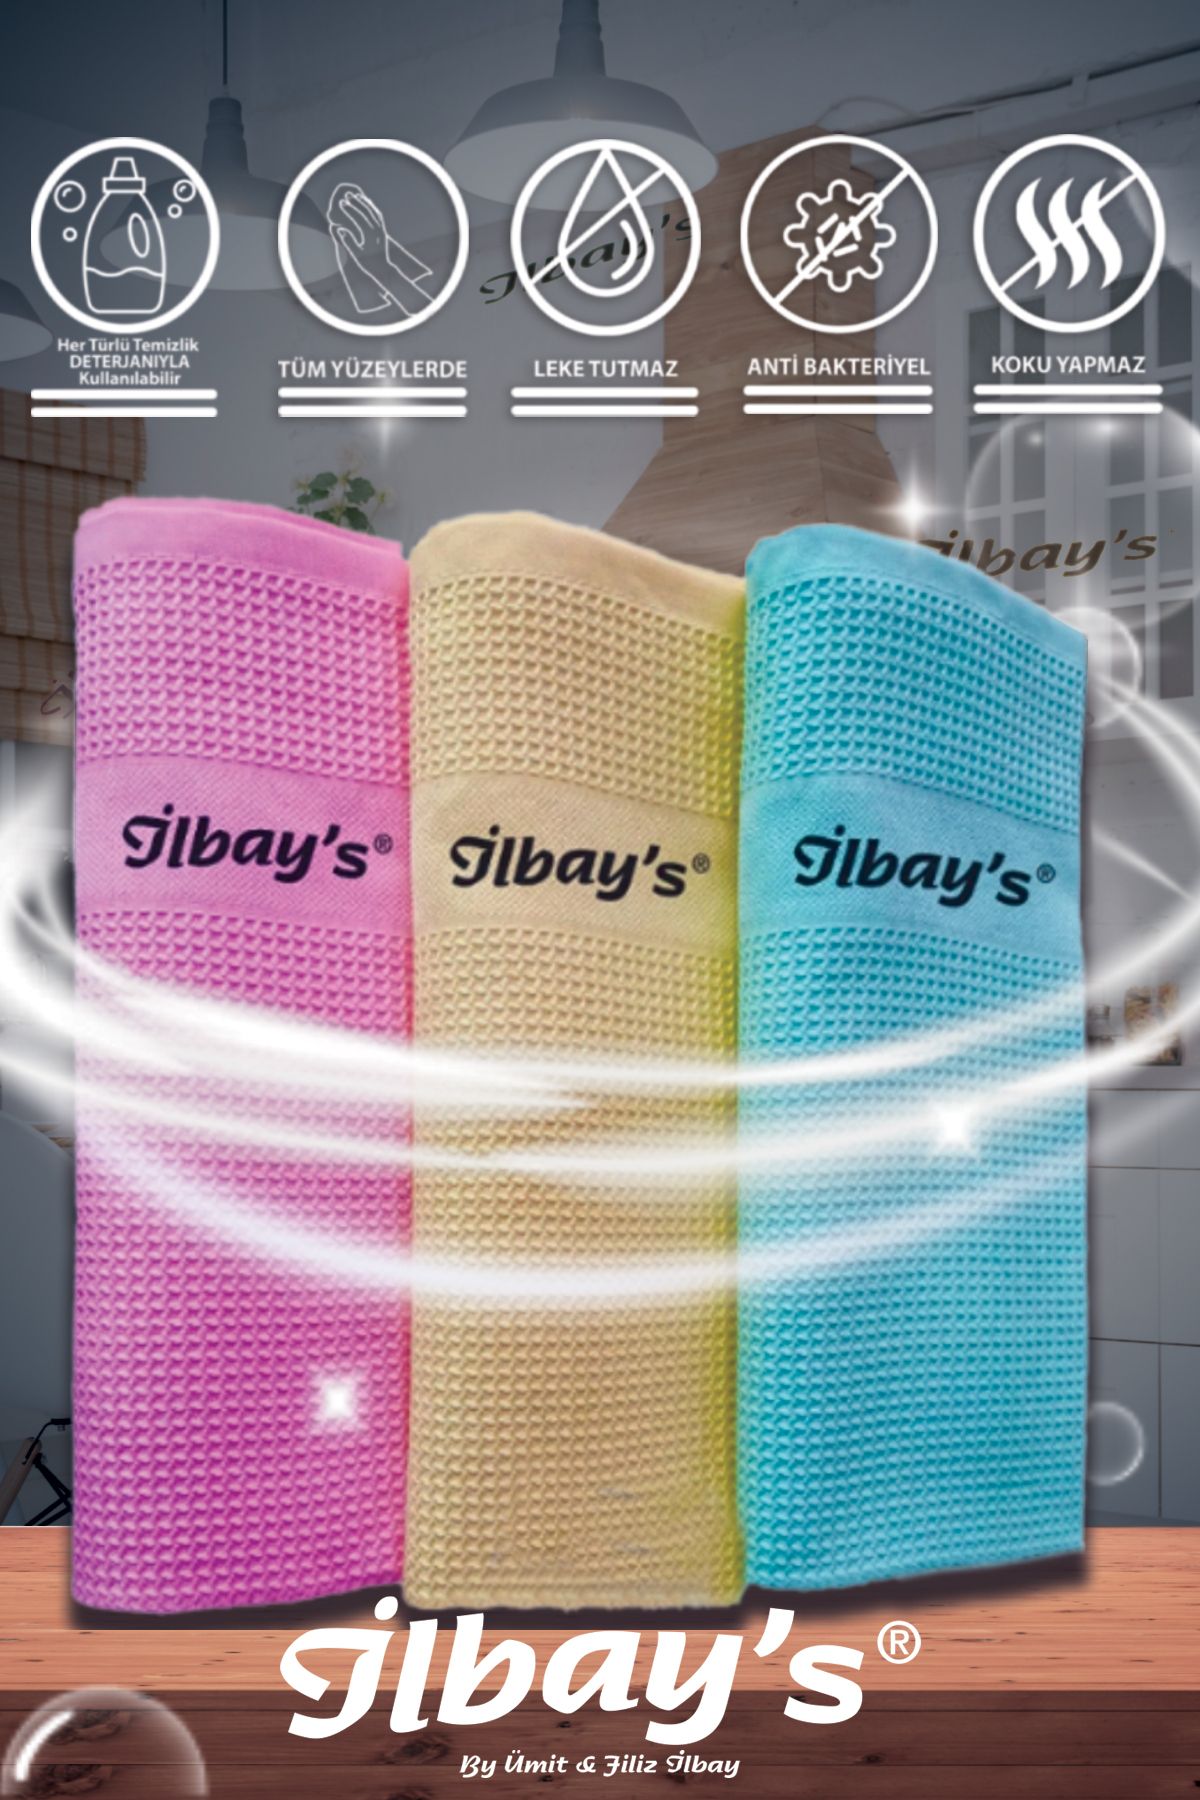 İlbay's 3'lü Mikrofiber Temizlik Bezi - Qr Kod Orijinallik Kontrollü